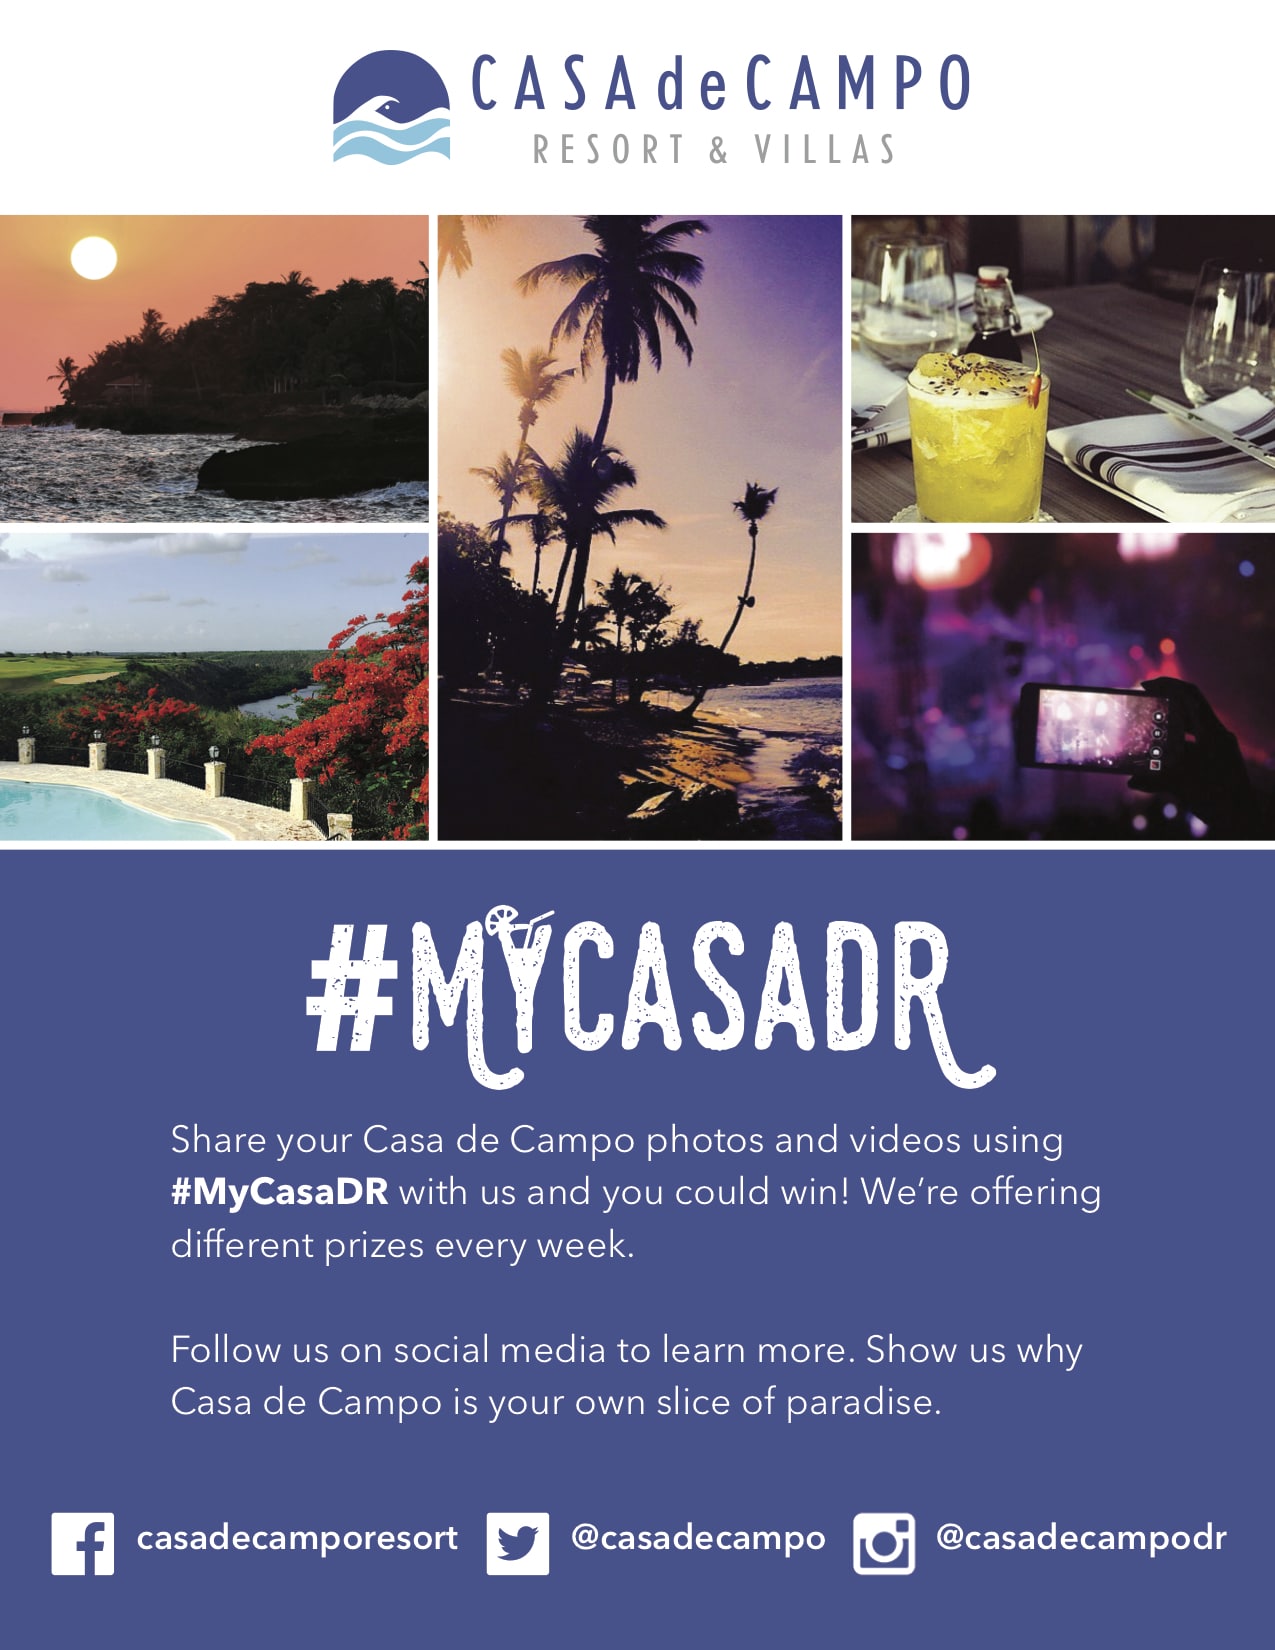 Share photos with #MyCasaDR and win!